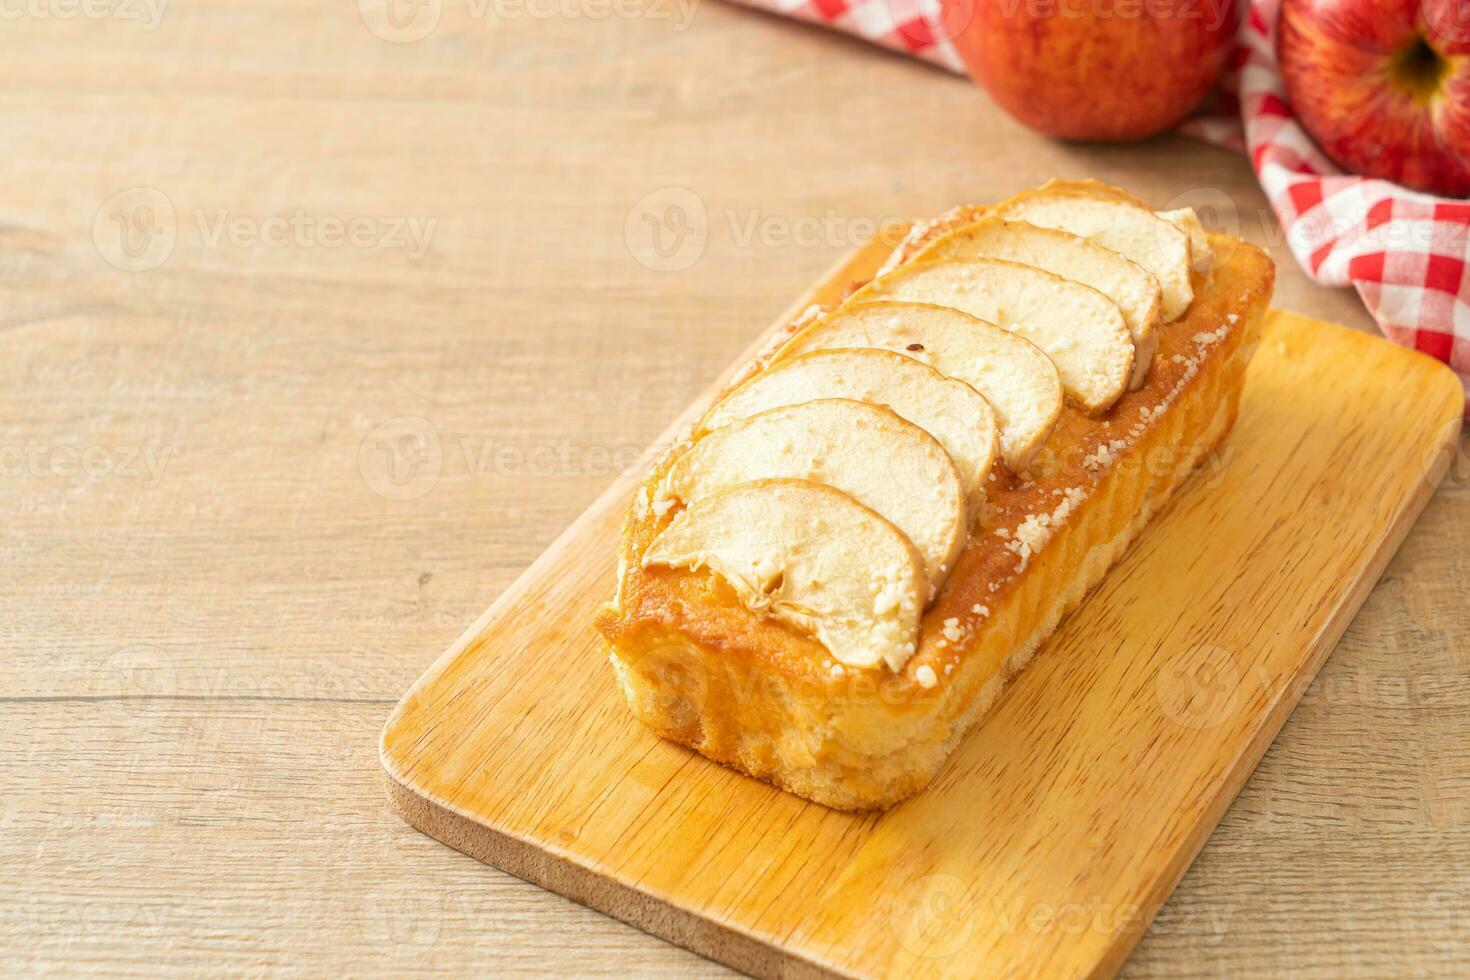 Appelbrood verkruimeld op een houten bord foto